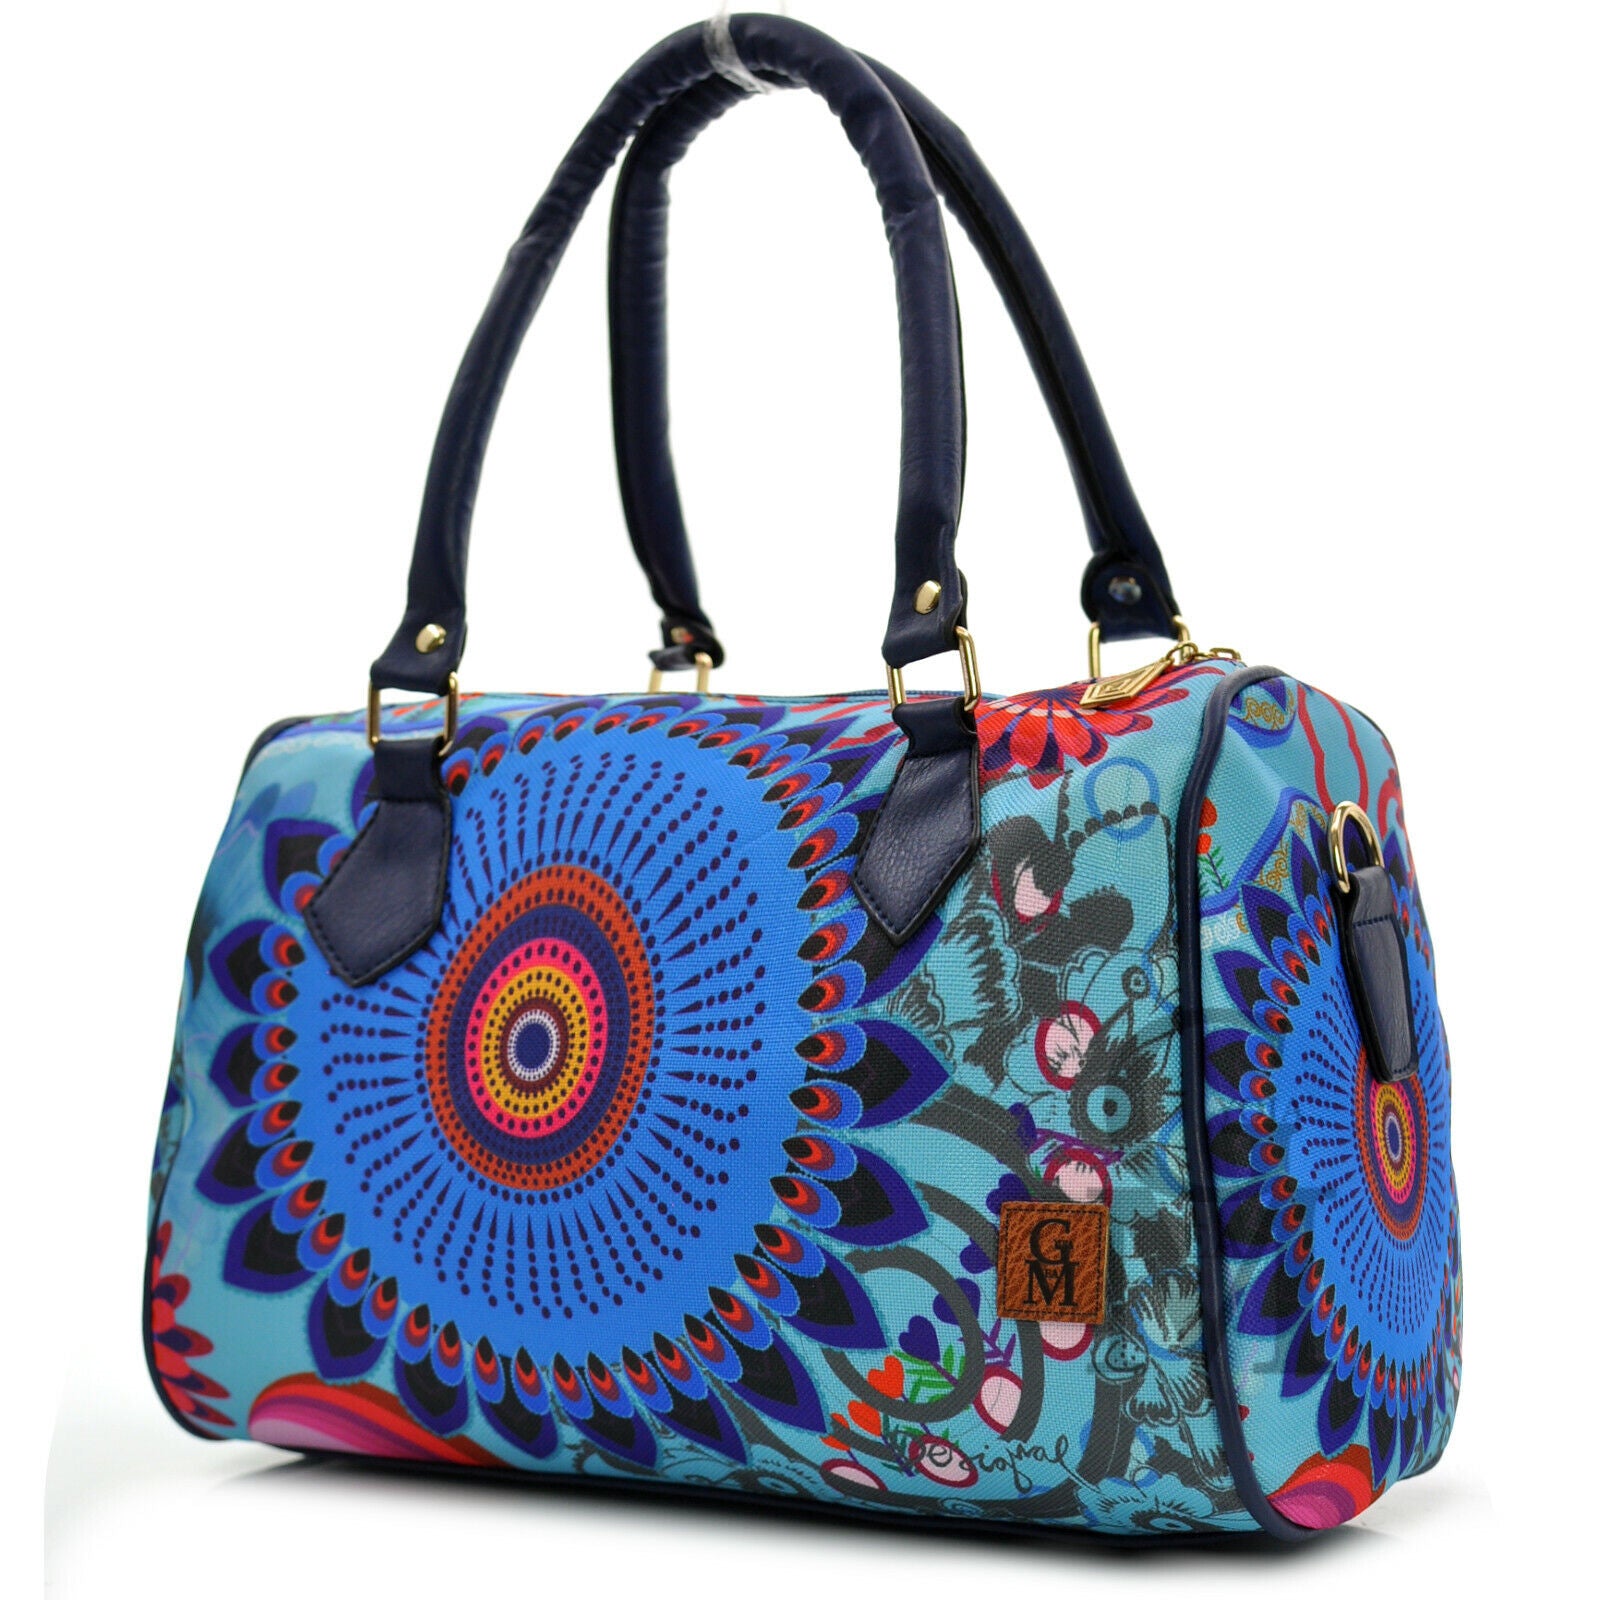 Borsa valigetta donna cartella fantasia fiori fiorata colorata disegni –  Gyoiamea